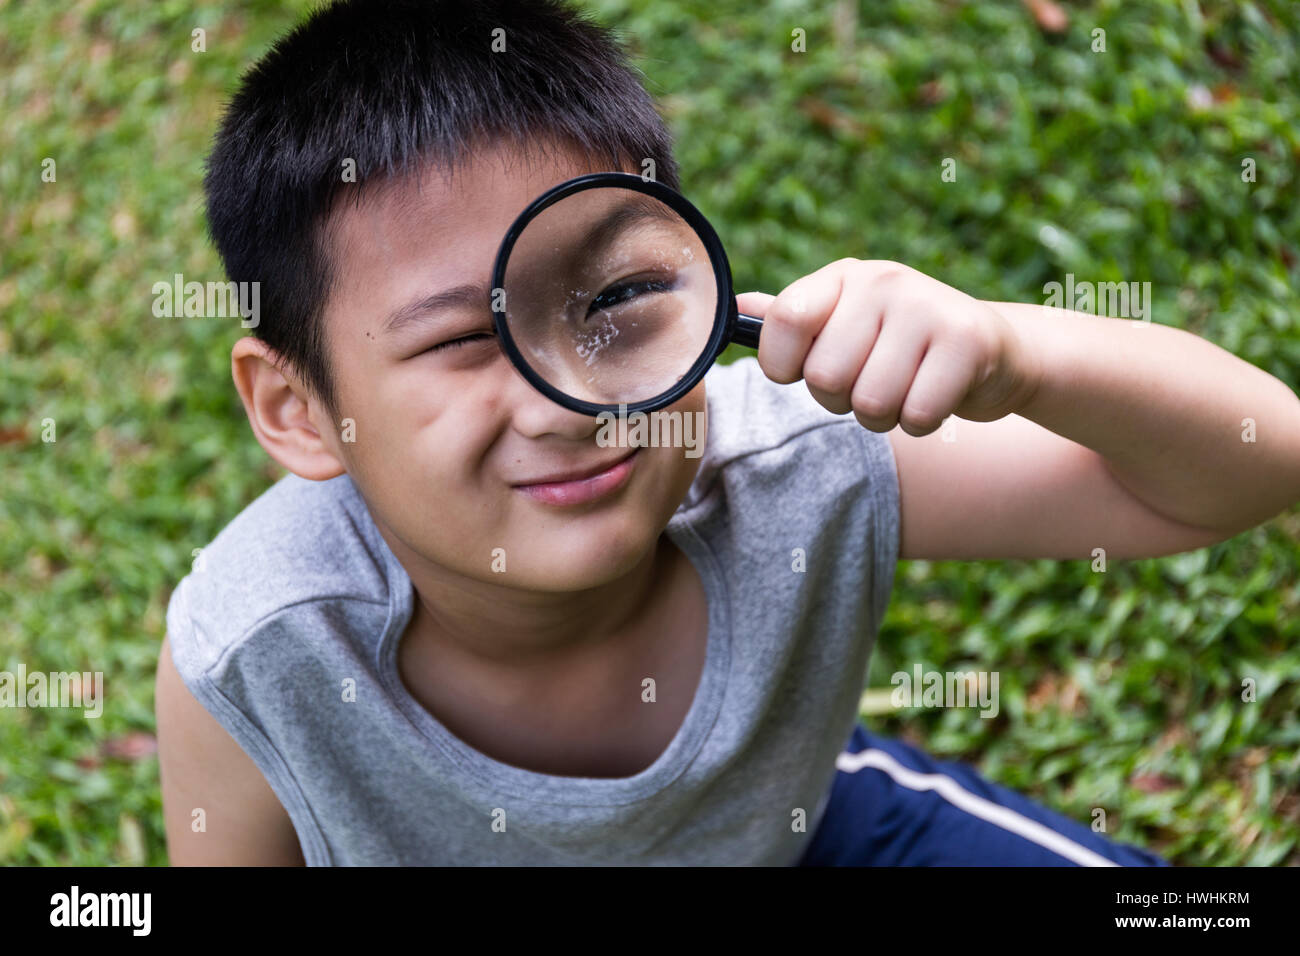 Gerne asiatische chinesische kleine Junge Blick durch die Lupe am Garten  Stockfotografie - Alamy